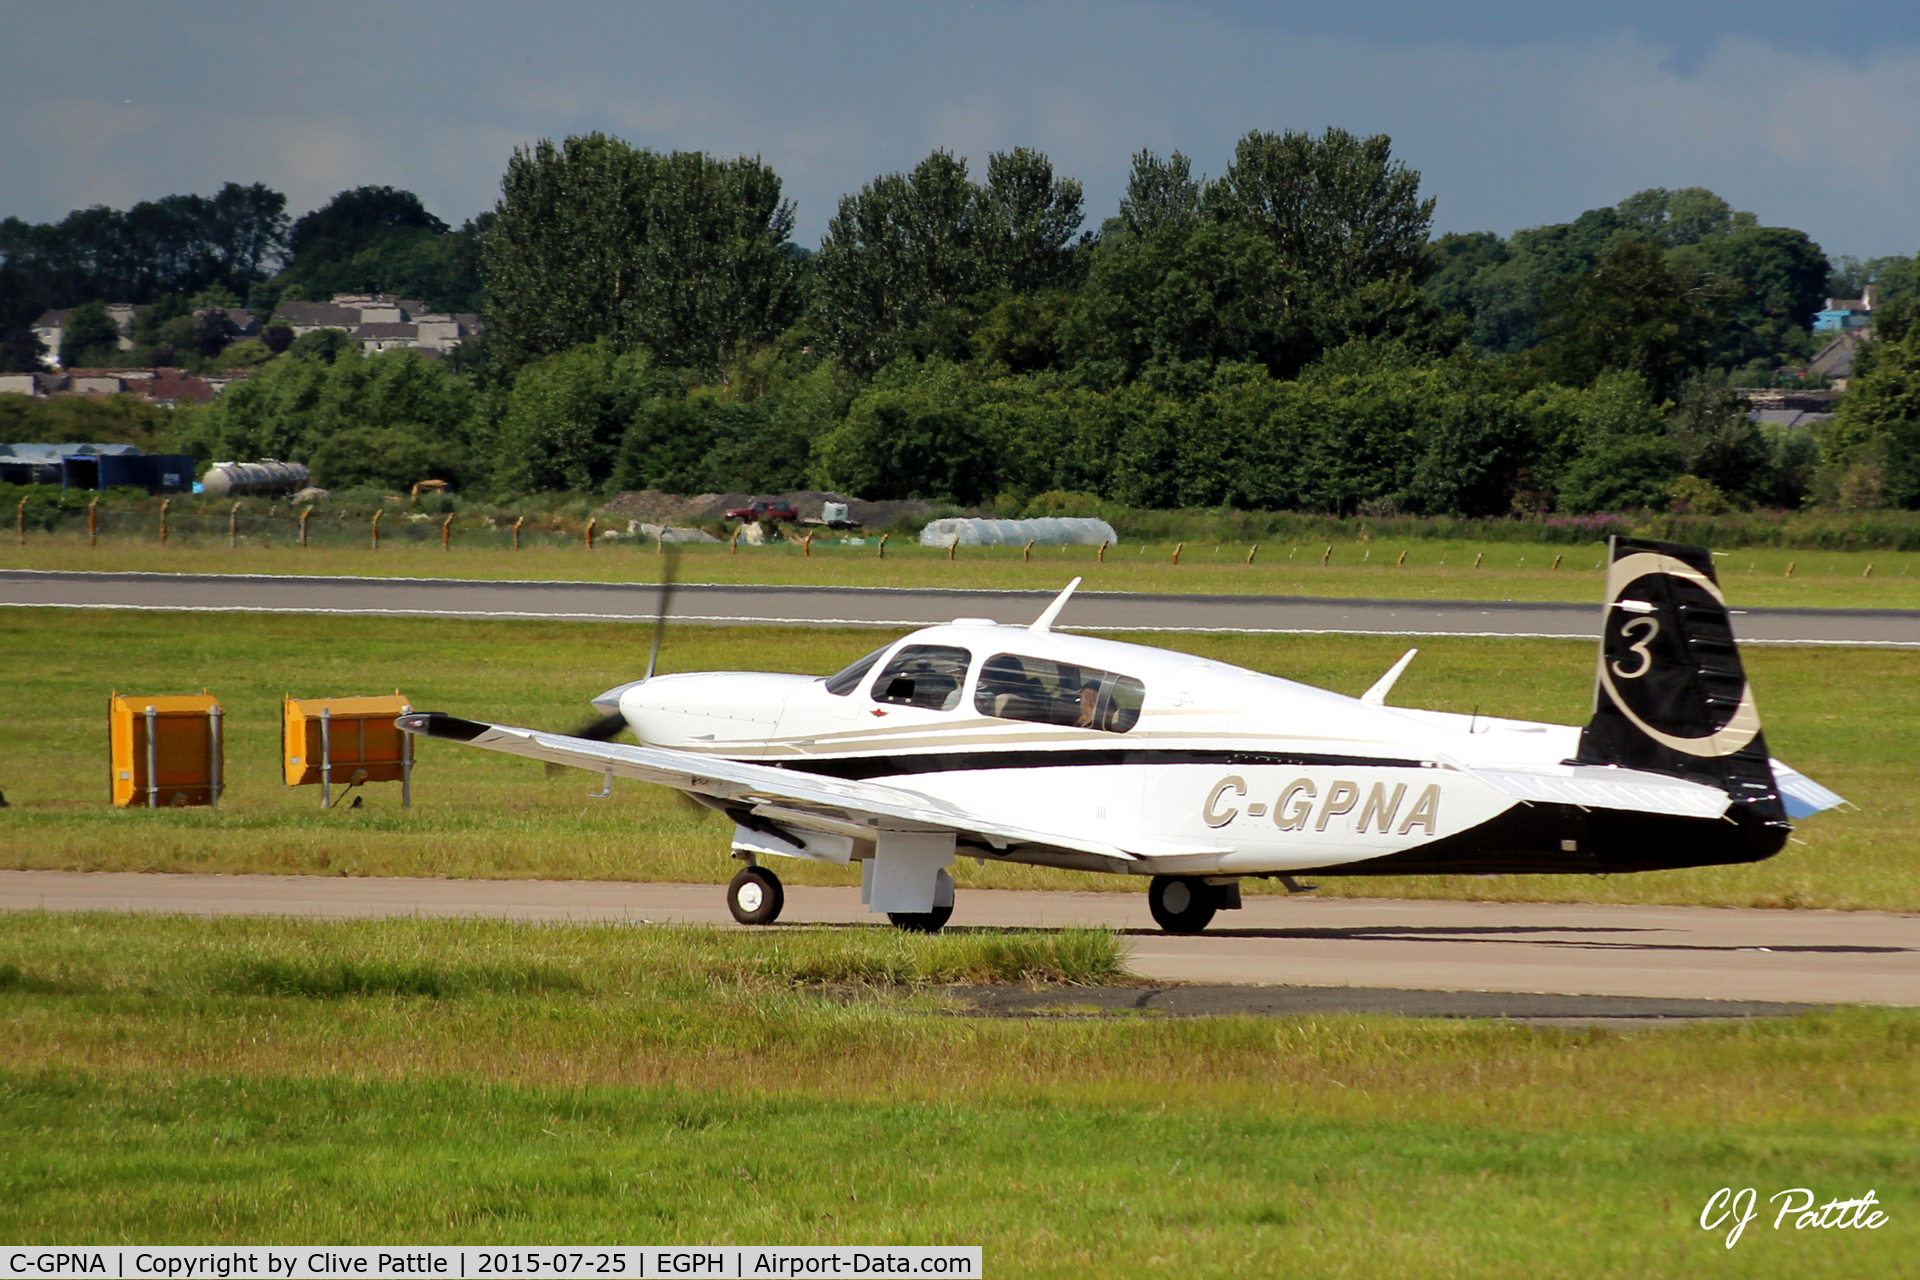 C-GPNA, 2007 Mooney M20R Ovation C/N 29-0487, Taxy to take-off from rwy 06 at Edinburgh EGPH.